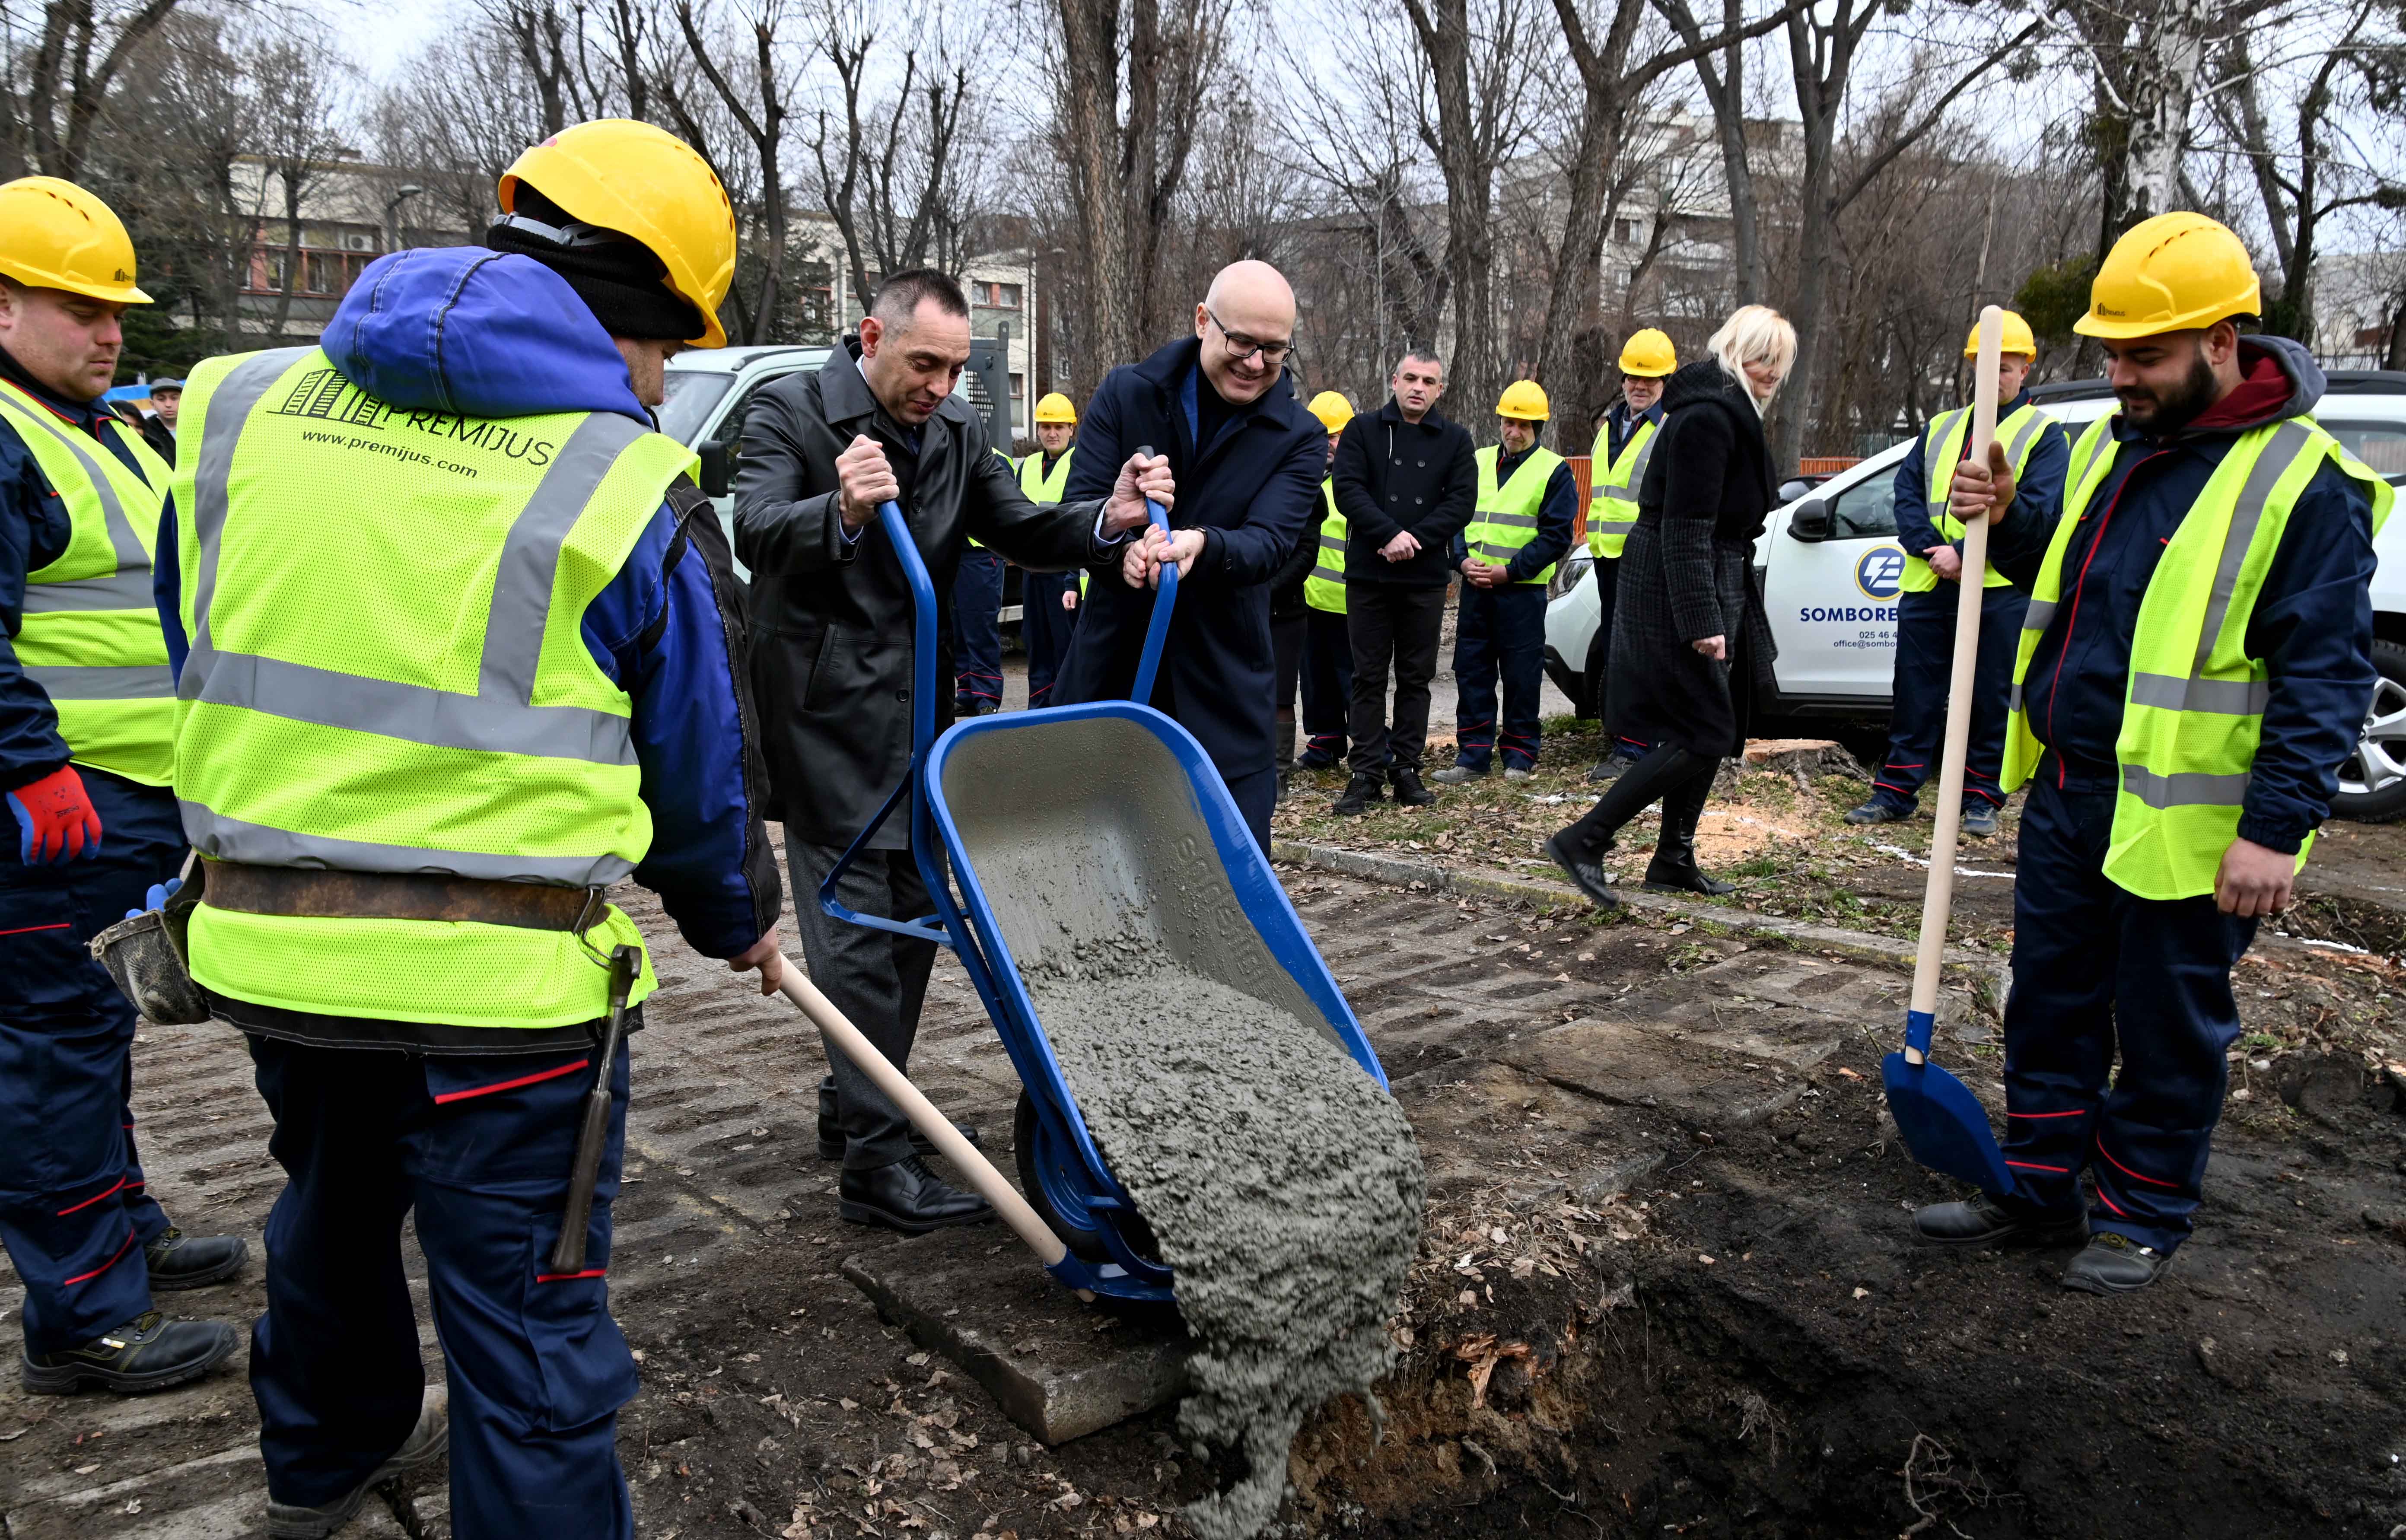 Ministar Aleksandar Vulin i gradonačelnik Novog Sada Miloš Vučević položili su kamen temelјac za izgradnju nove Policijske ispostave